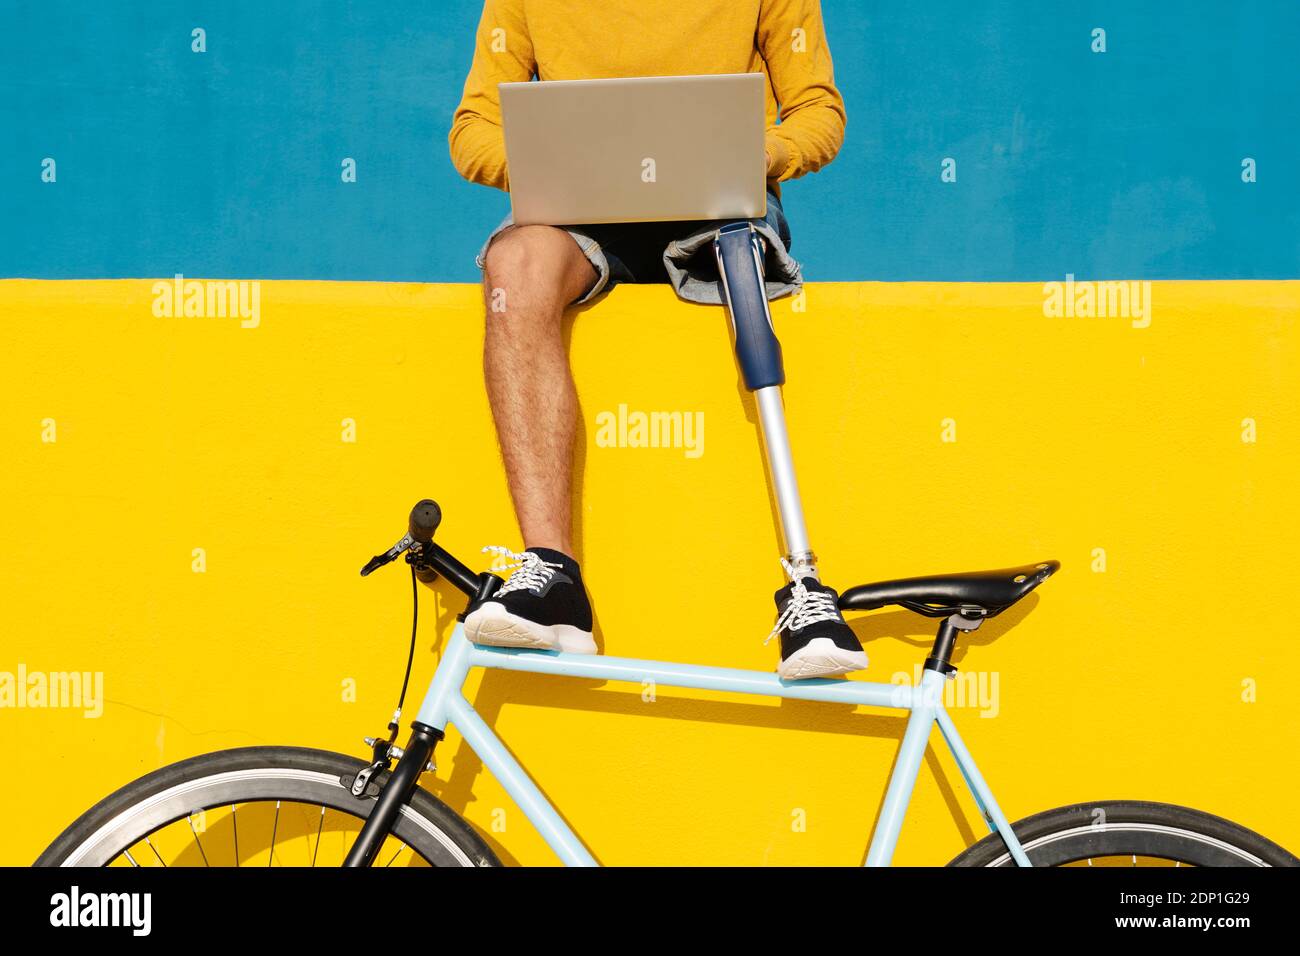 Homme avec un membre et un pied artificiels utilisant un ordinateur portable pendant qu'il est assis sur un mur multicolore Banque D'Images